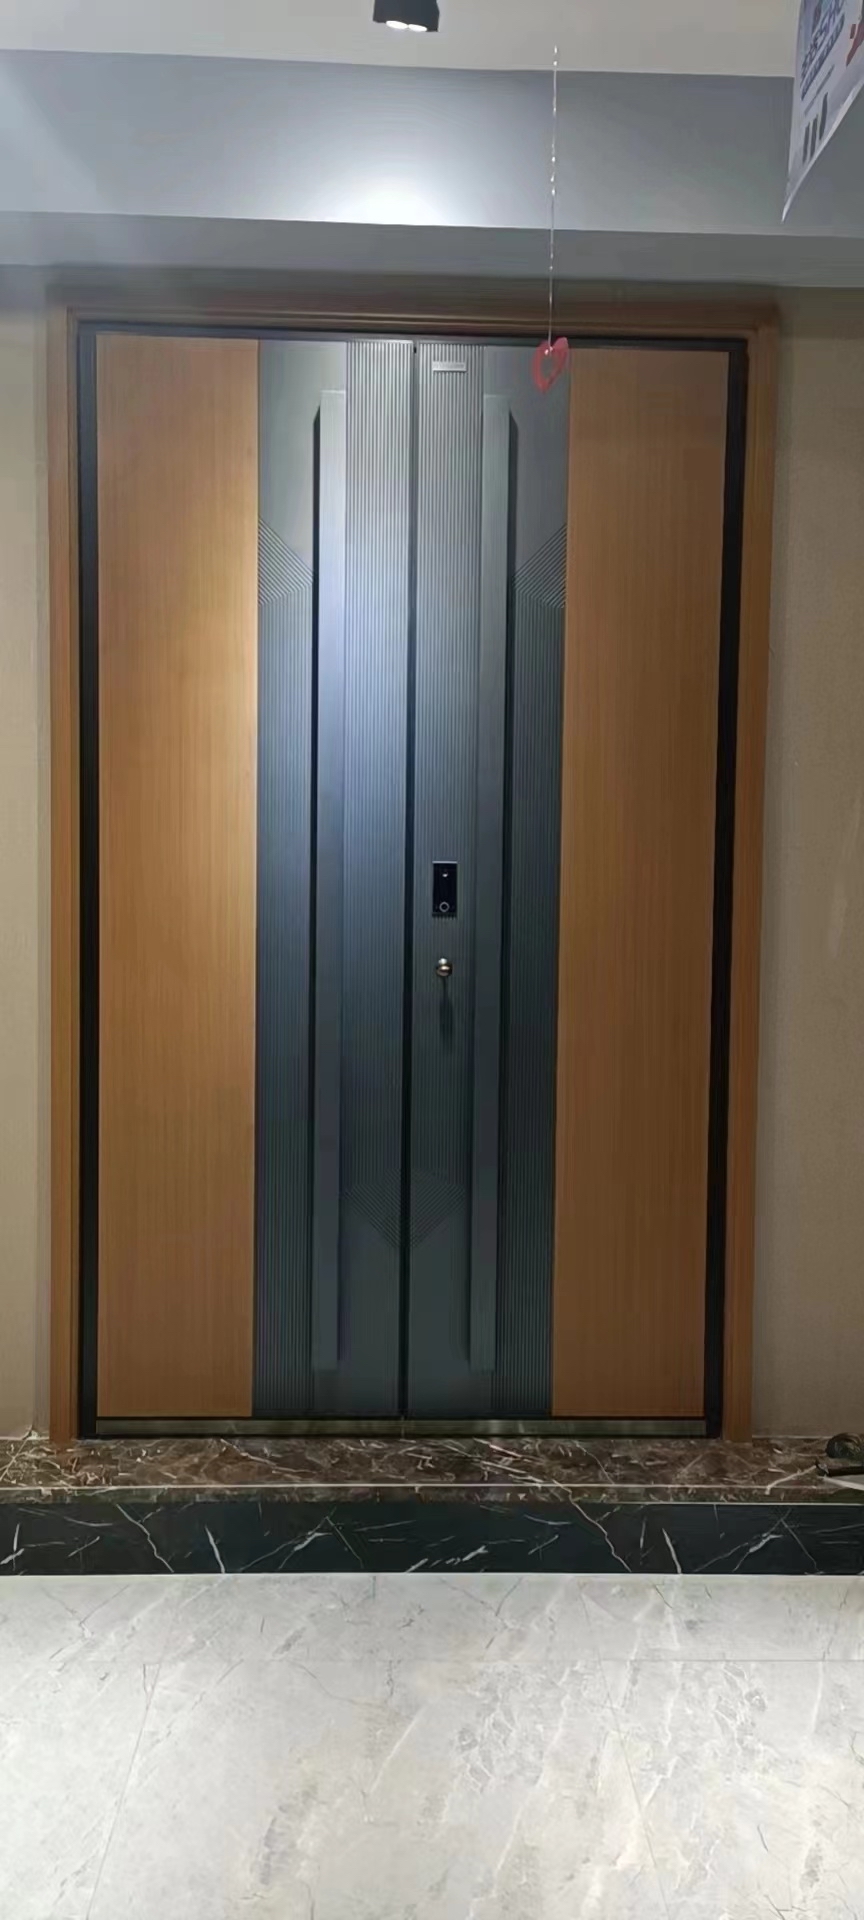 小朋友,这个棕色的门看起来好酷啊!它的颜色好深邃,让人感觉很神秘